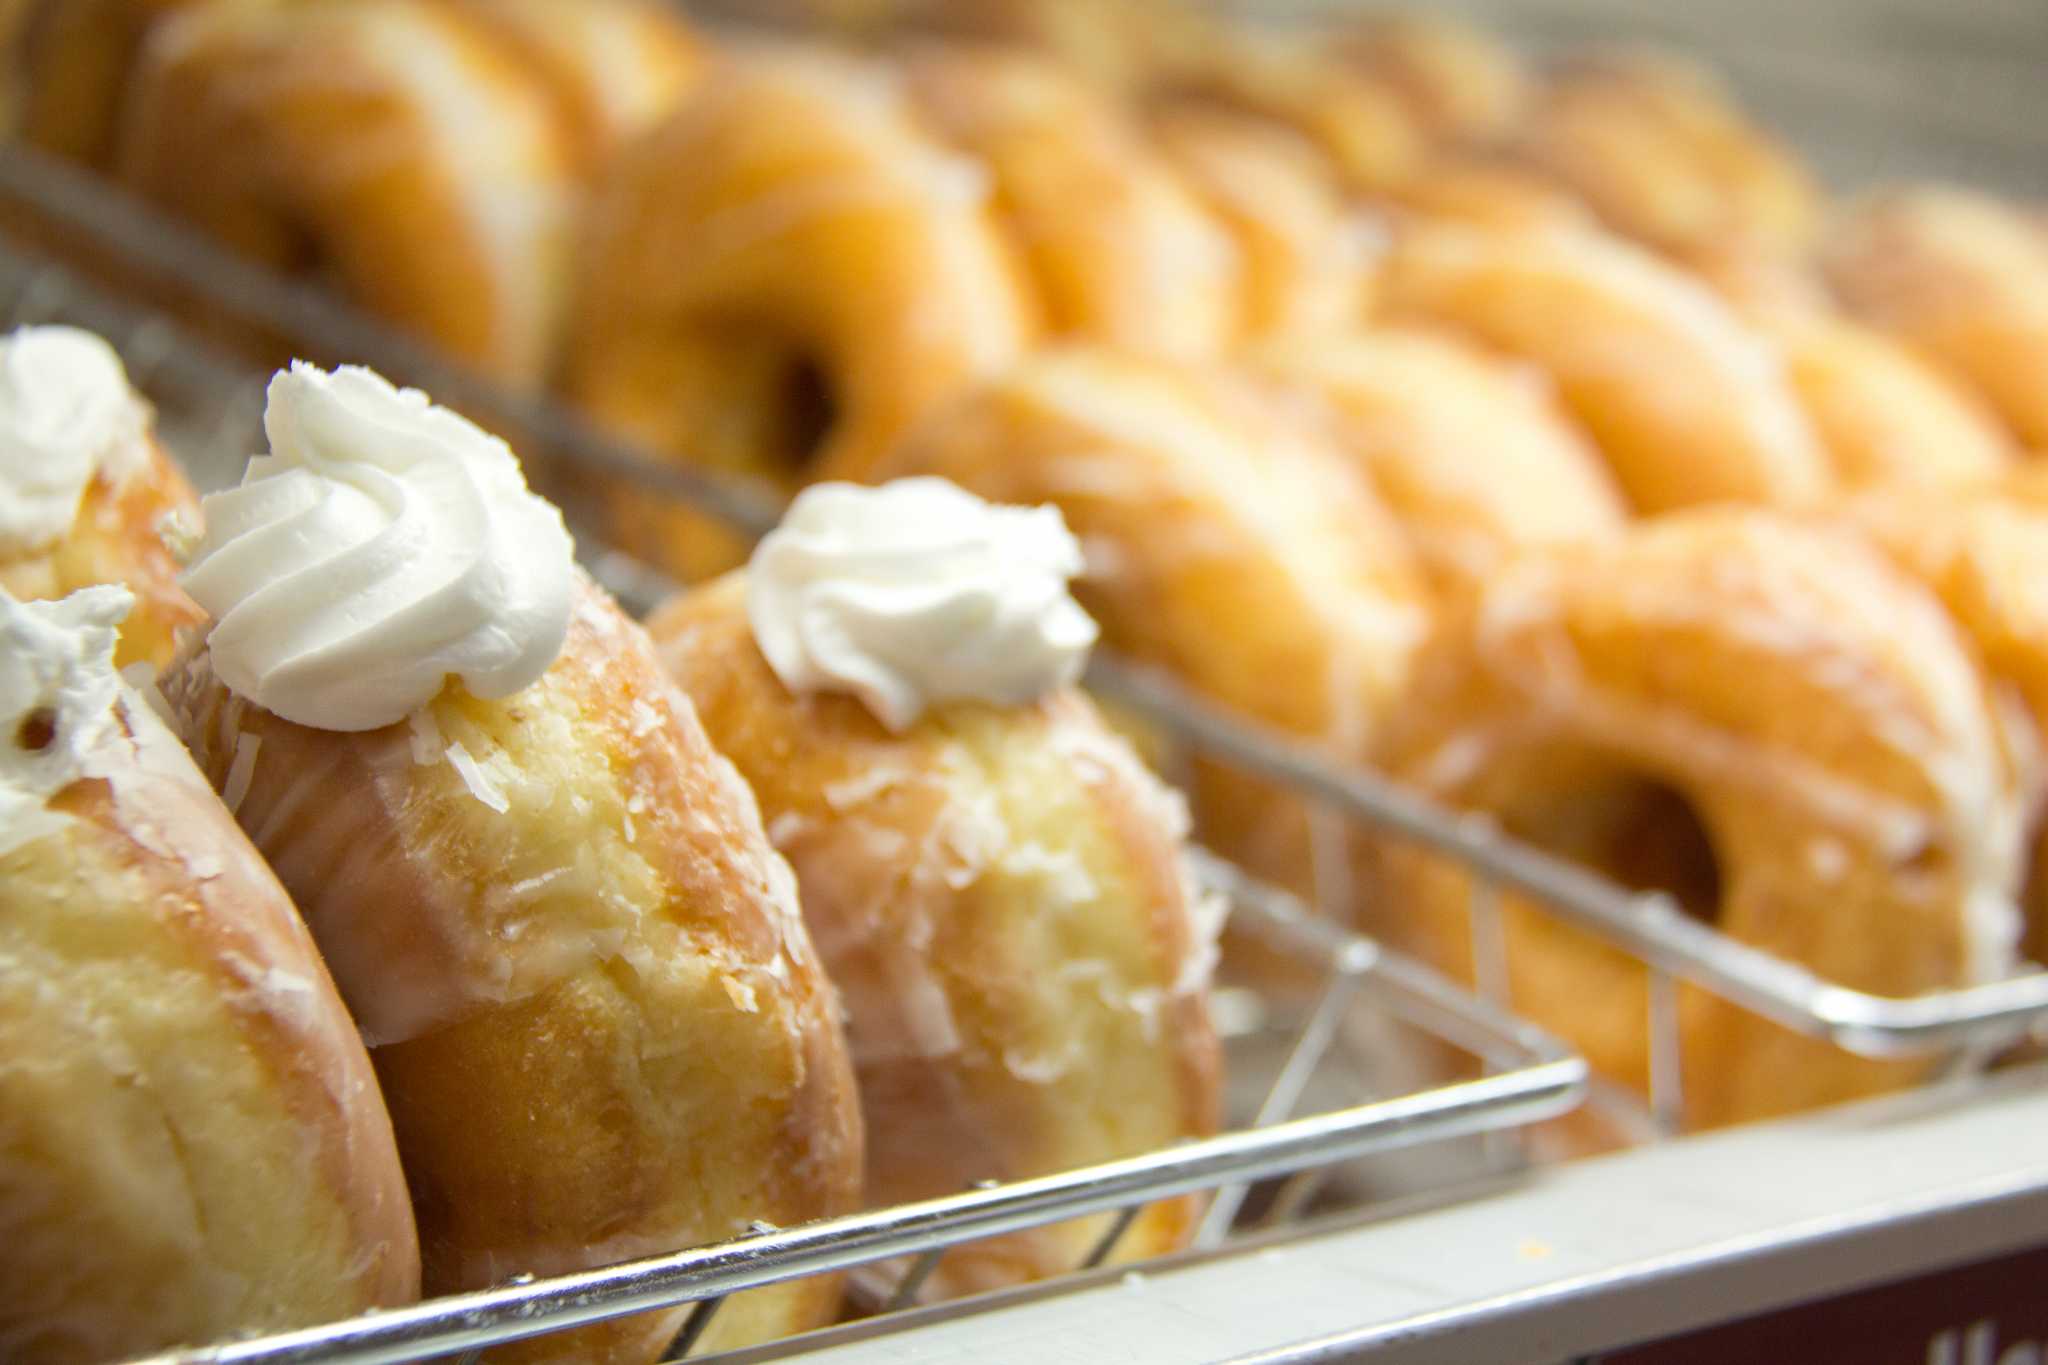 60 Haverhill Rd. Amesbury, MA – Heav’nly Donuts